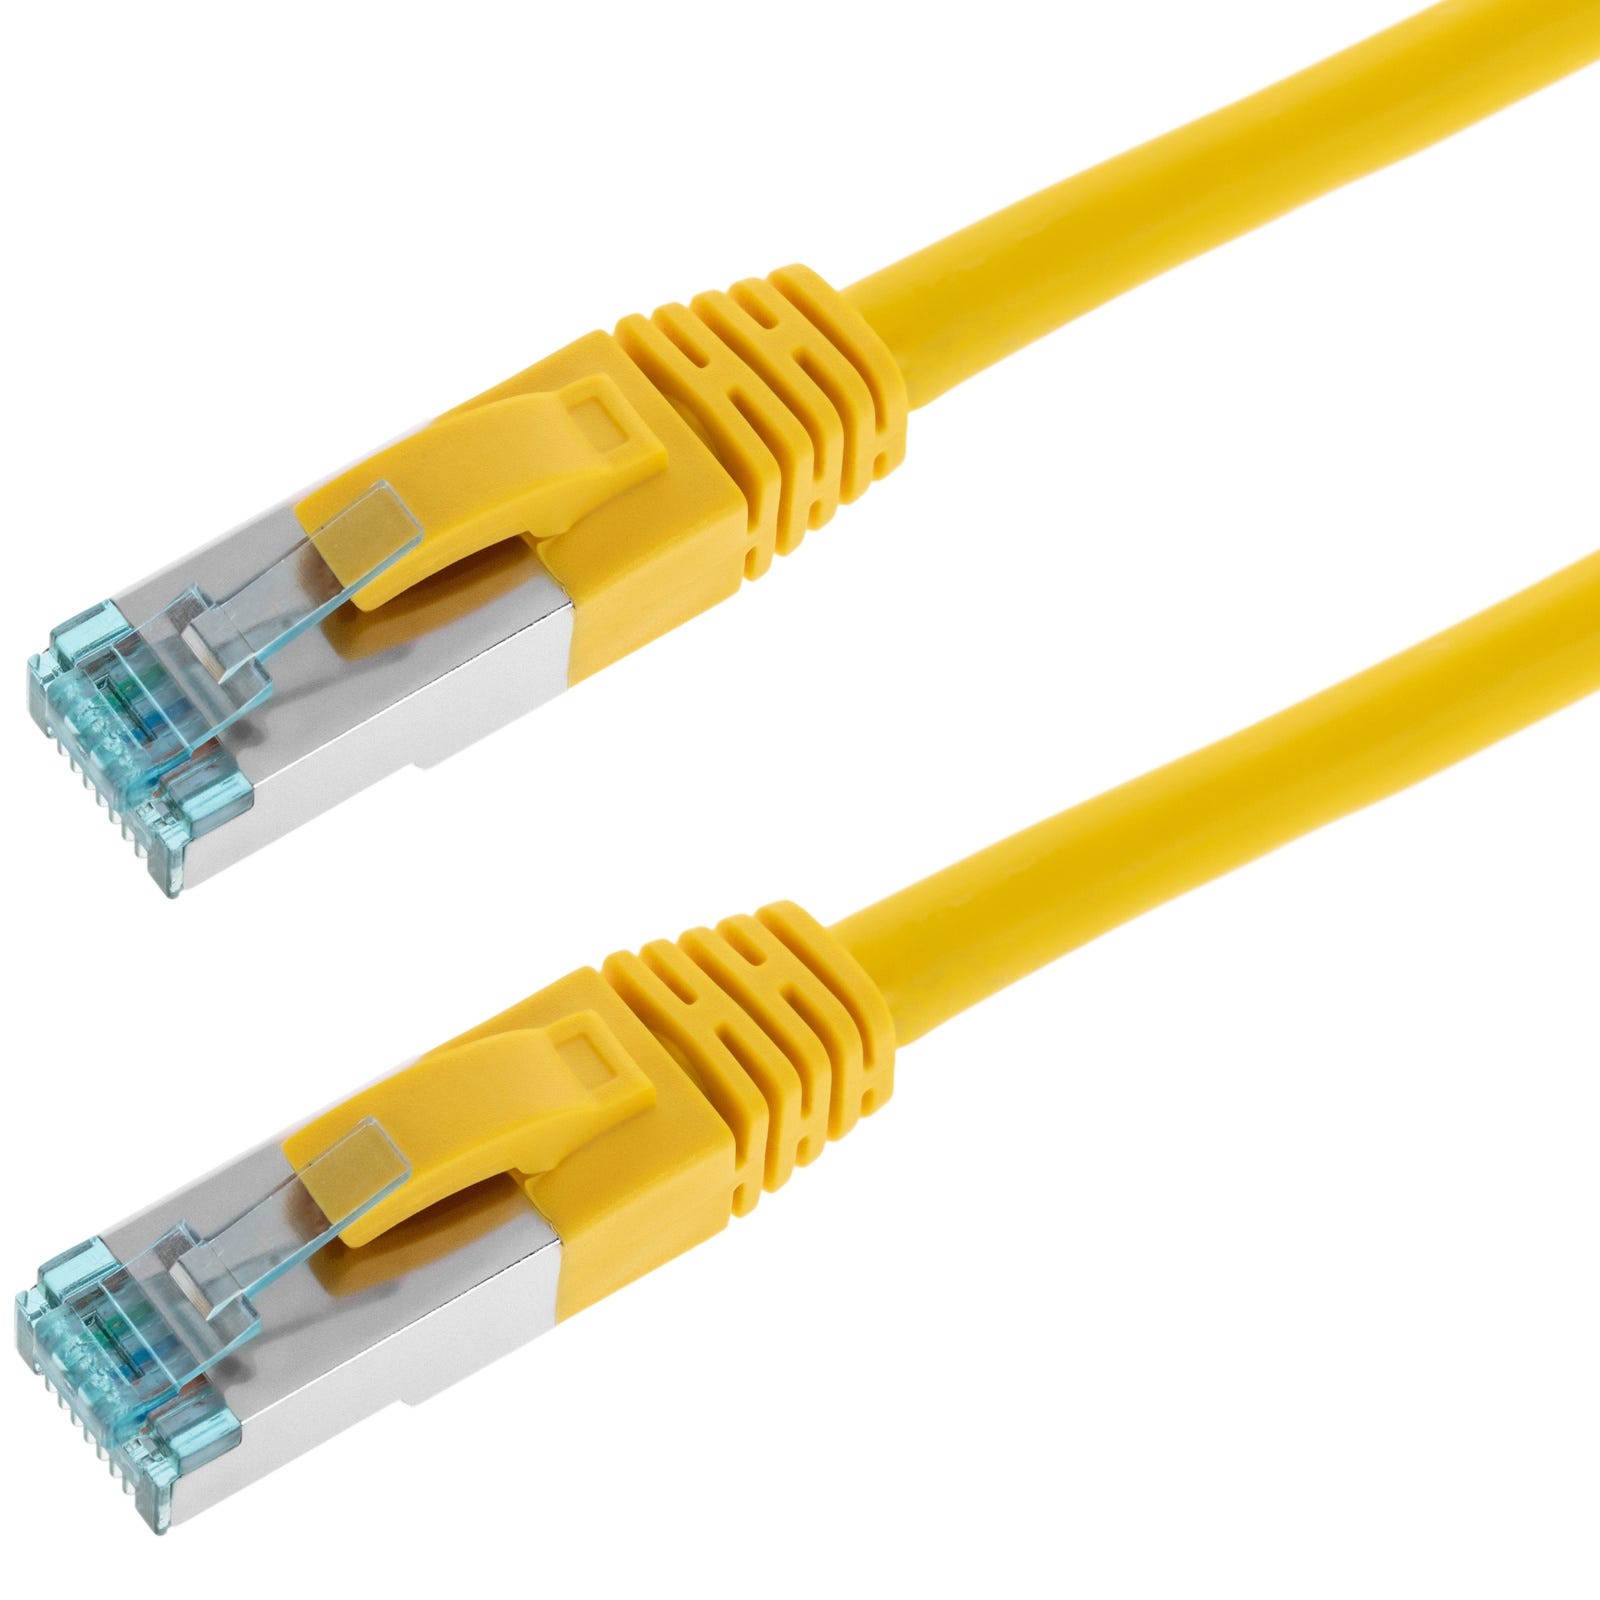 Câble réseau Ethernet (RJ45) catégorie 6A S/FTP jaune compatible